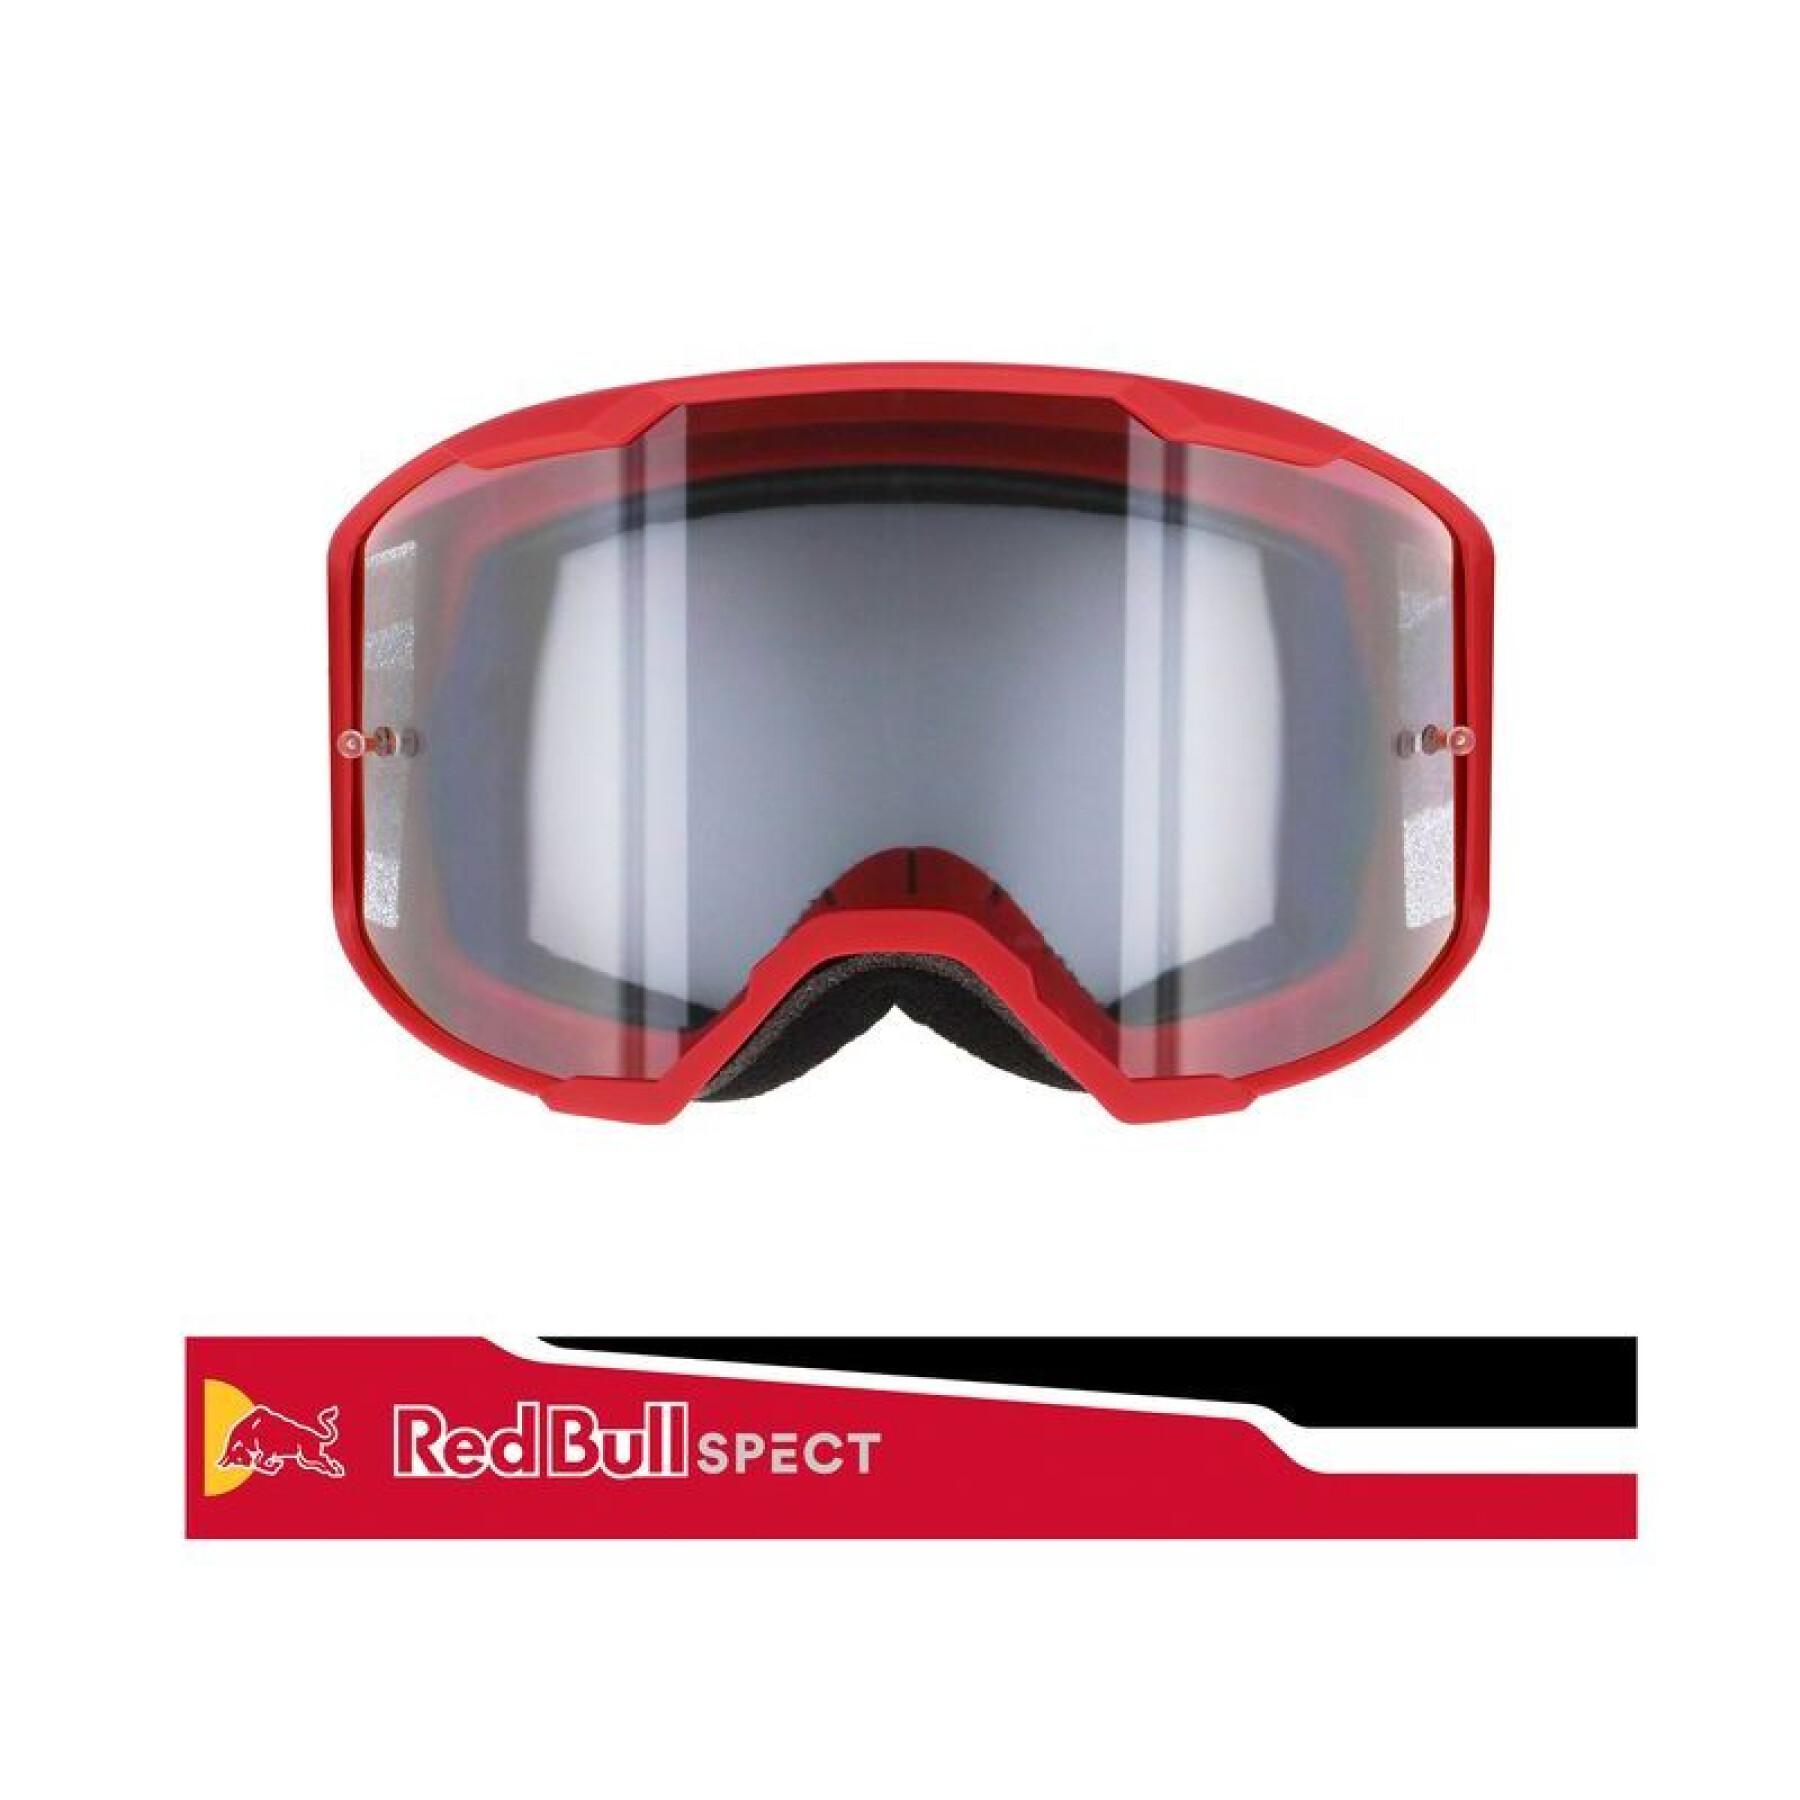 Motorbril met enkele lens Redbull Spect Eyewear Strive MX